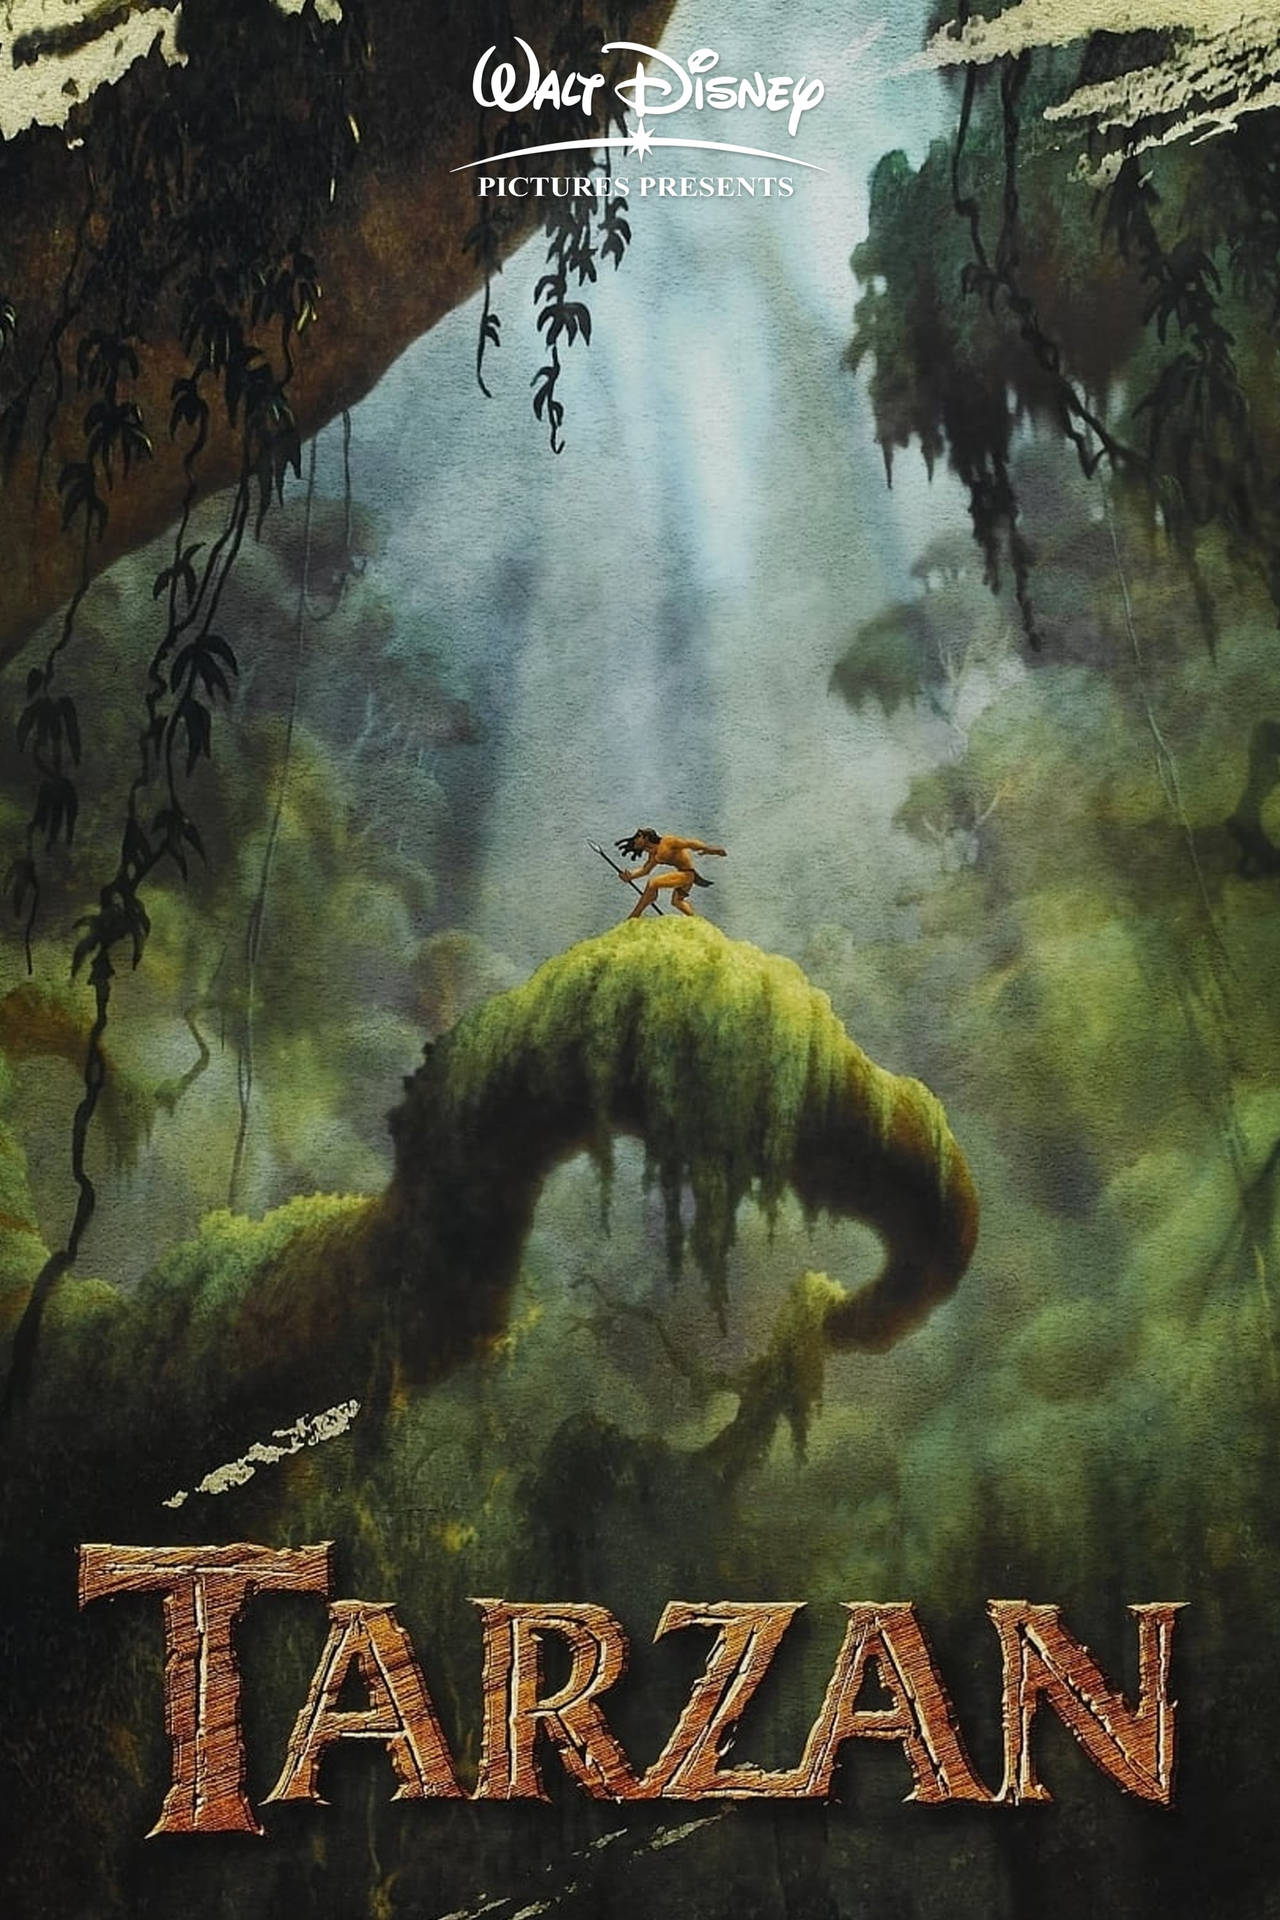 Waltdisneys Tarzan Cartoon. Wallpaper